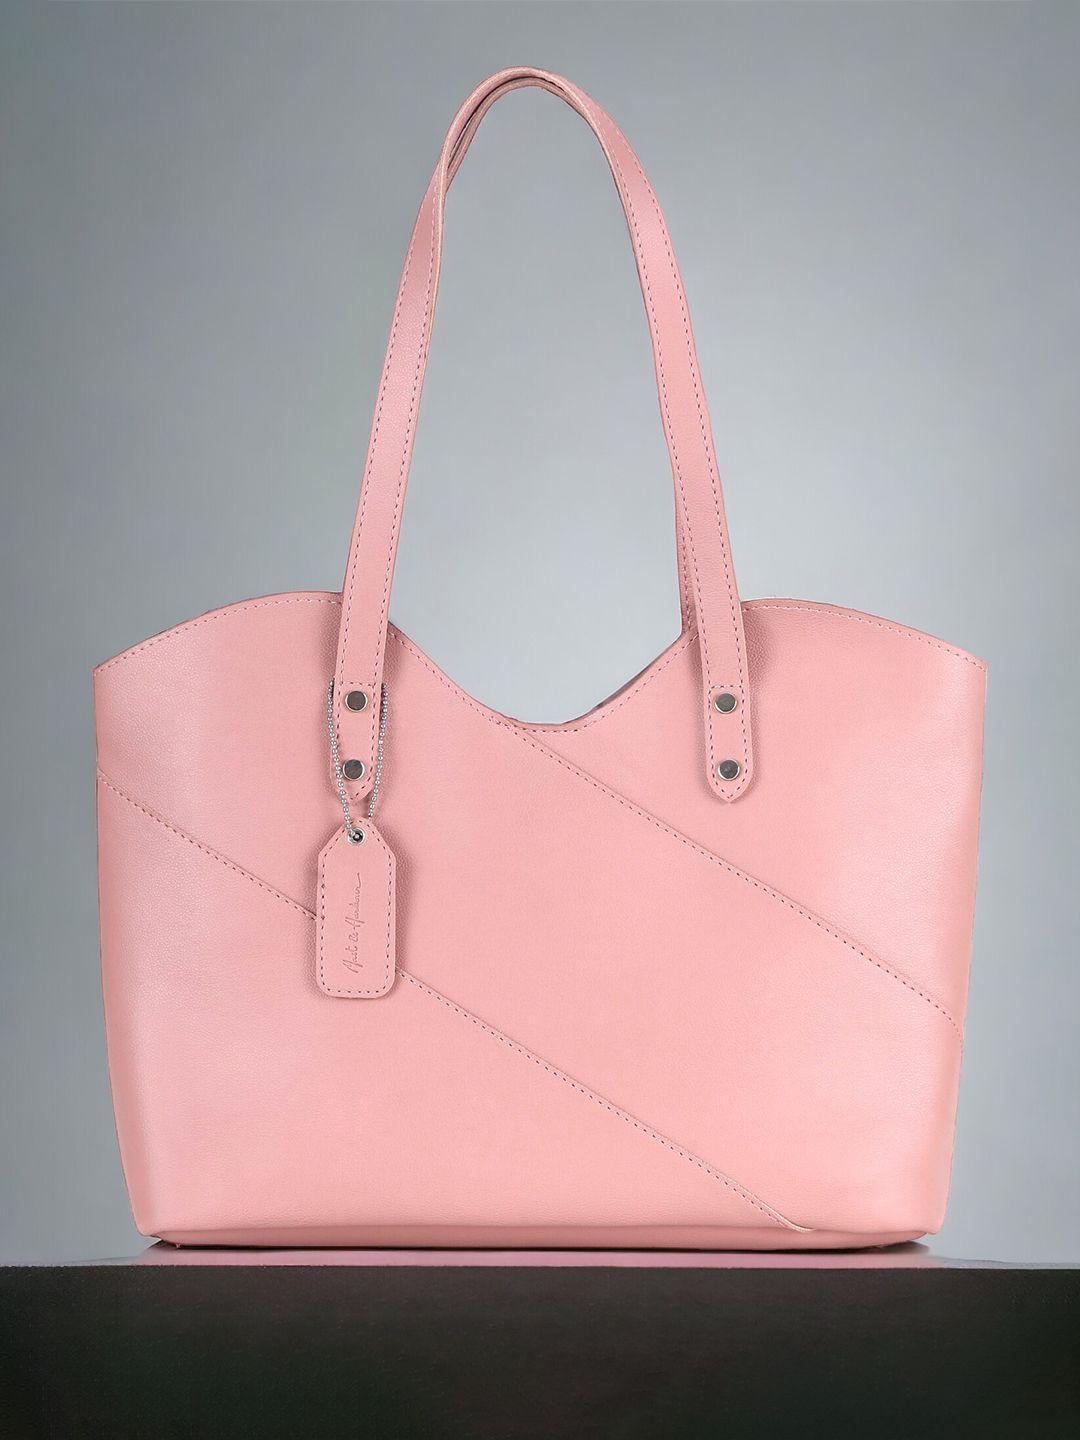 mast & harbour pink structured shoulder bag